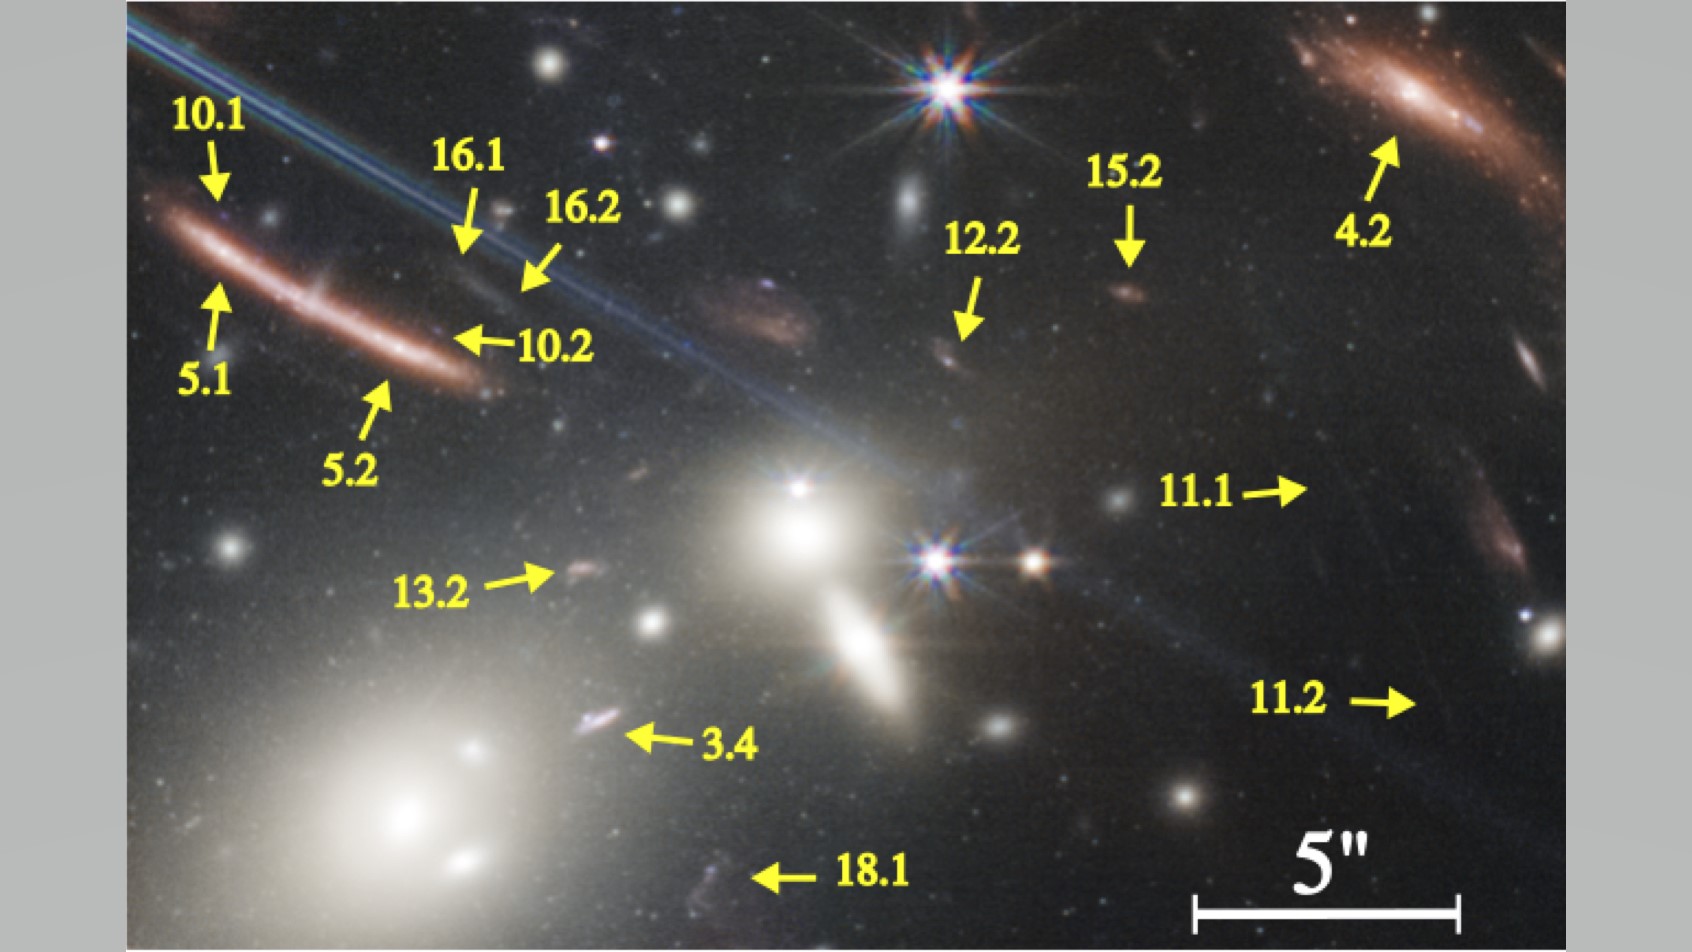 Šipky označují zvětšené galaxie